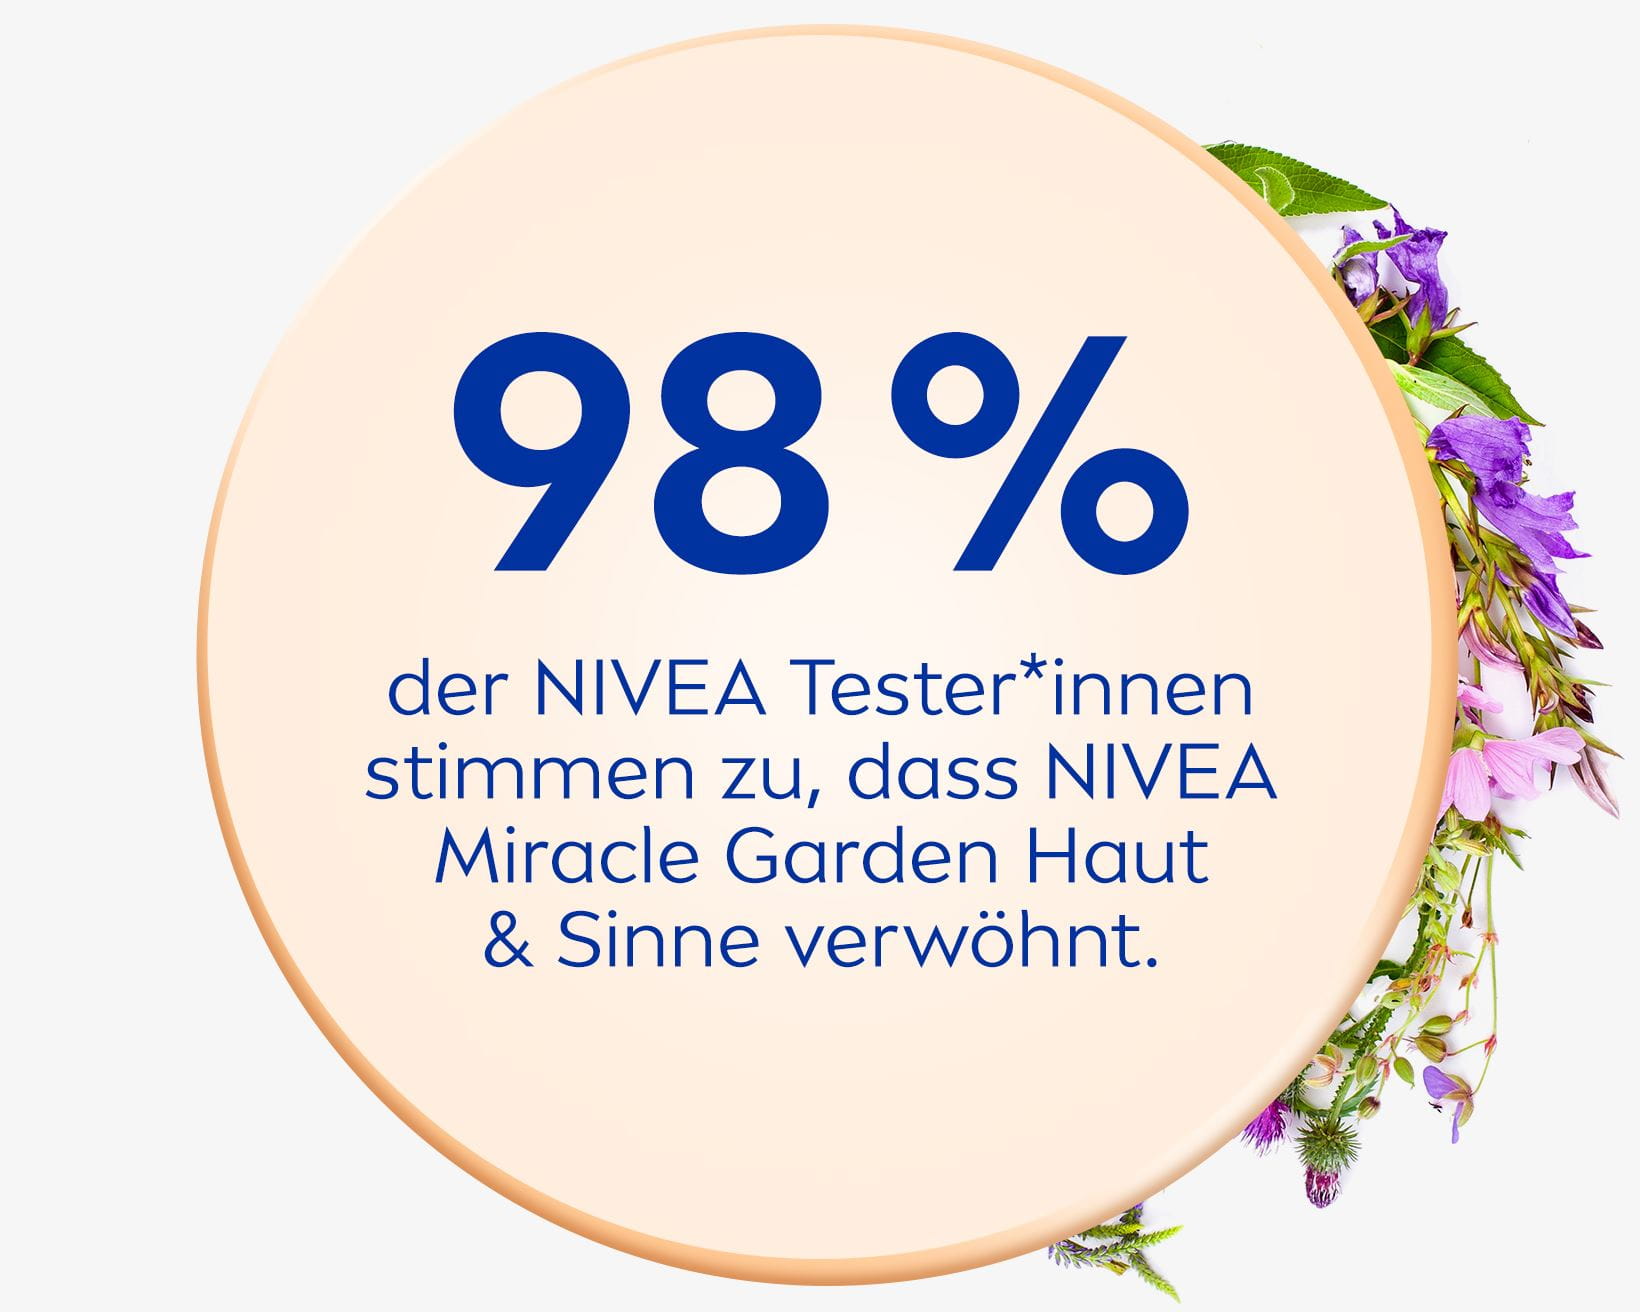 98 % der NIVEA Tester*innen stimmen zu, dass NIVEA Miracle Garden Haut & Sinne verwöhnt.